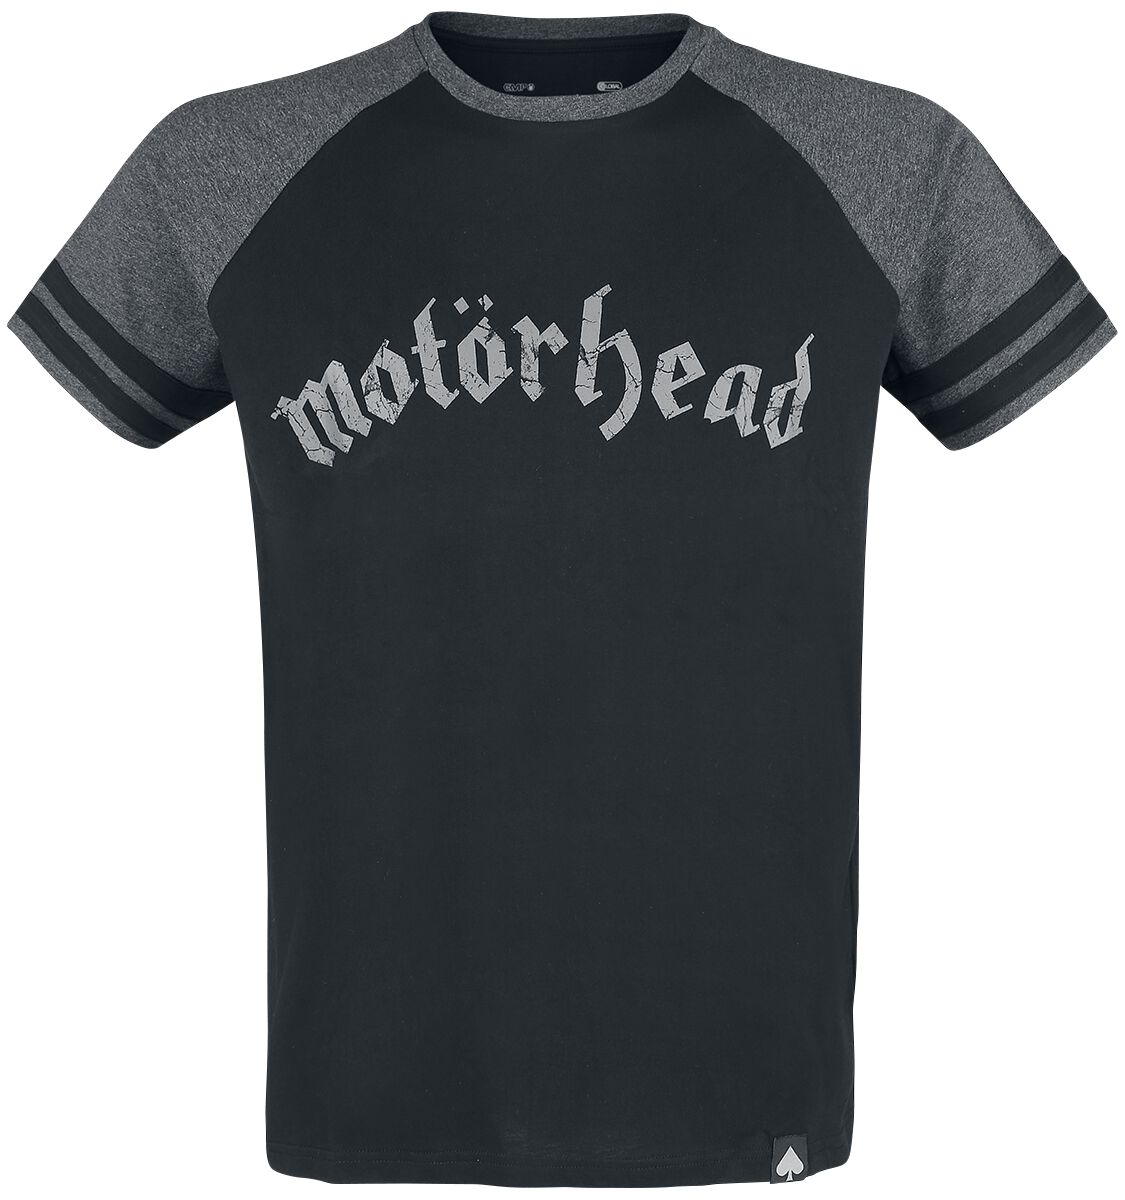 Motörhead T-Shirt - EMP Signature Collection - S bis 5XL - für Männer - Größe 5XL - schwarz/grau meliert  - EMP exklusives Merchandise!